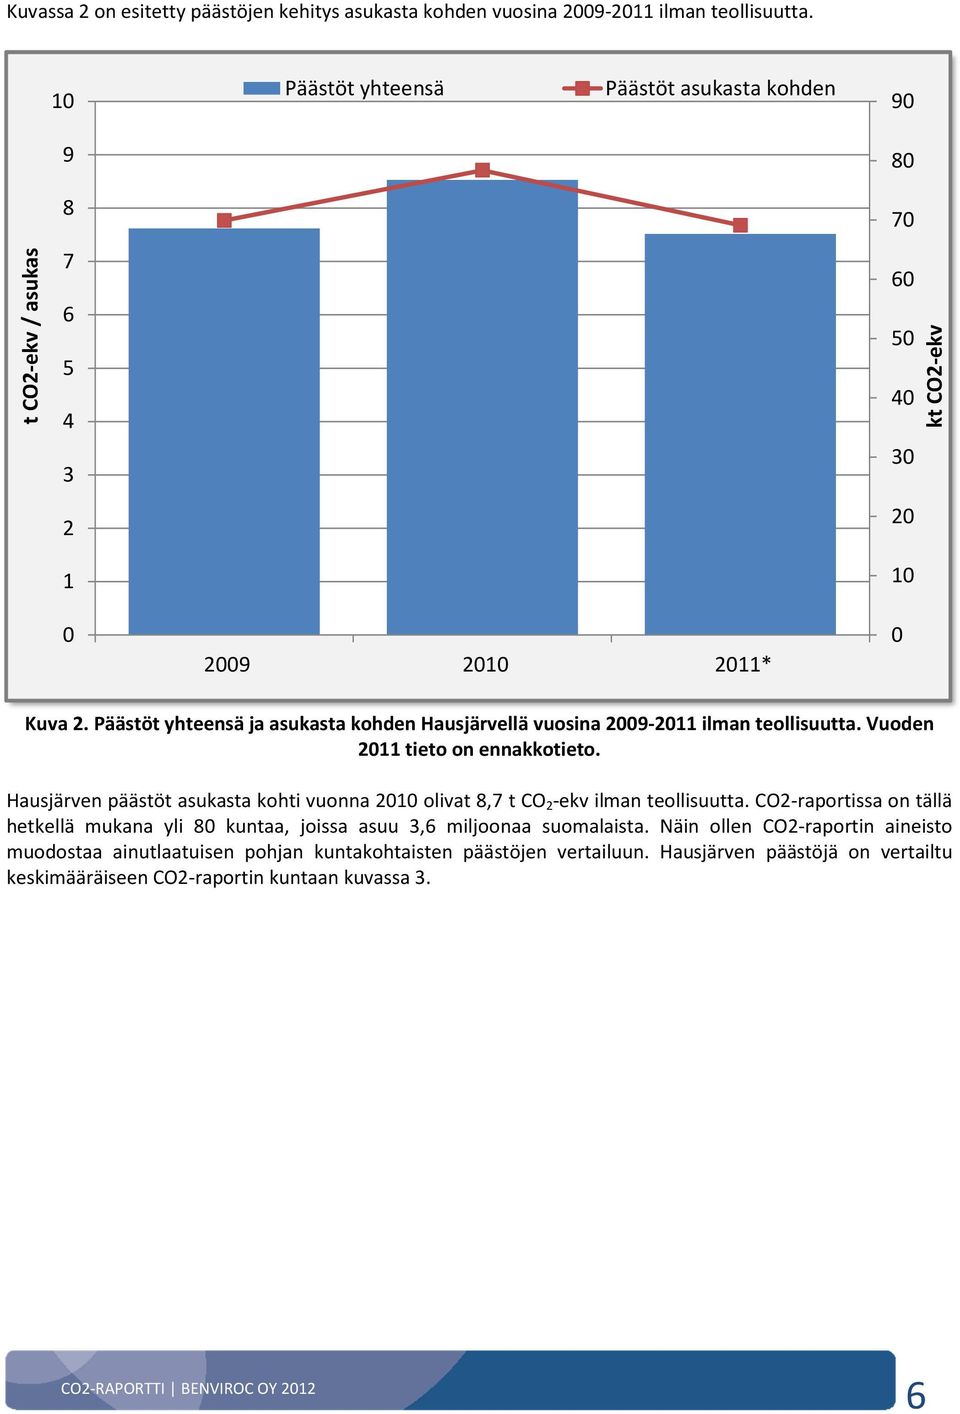 Päästöt yhteensä ja asukasta kohden Hausjärvellä vuosina 2009-2011 ilman teollisuutta. Vuoden 2011 tieto on ennakkotieto.